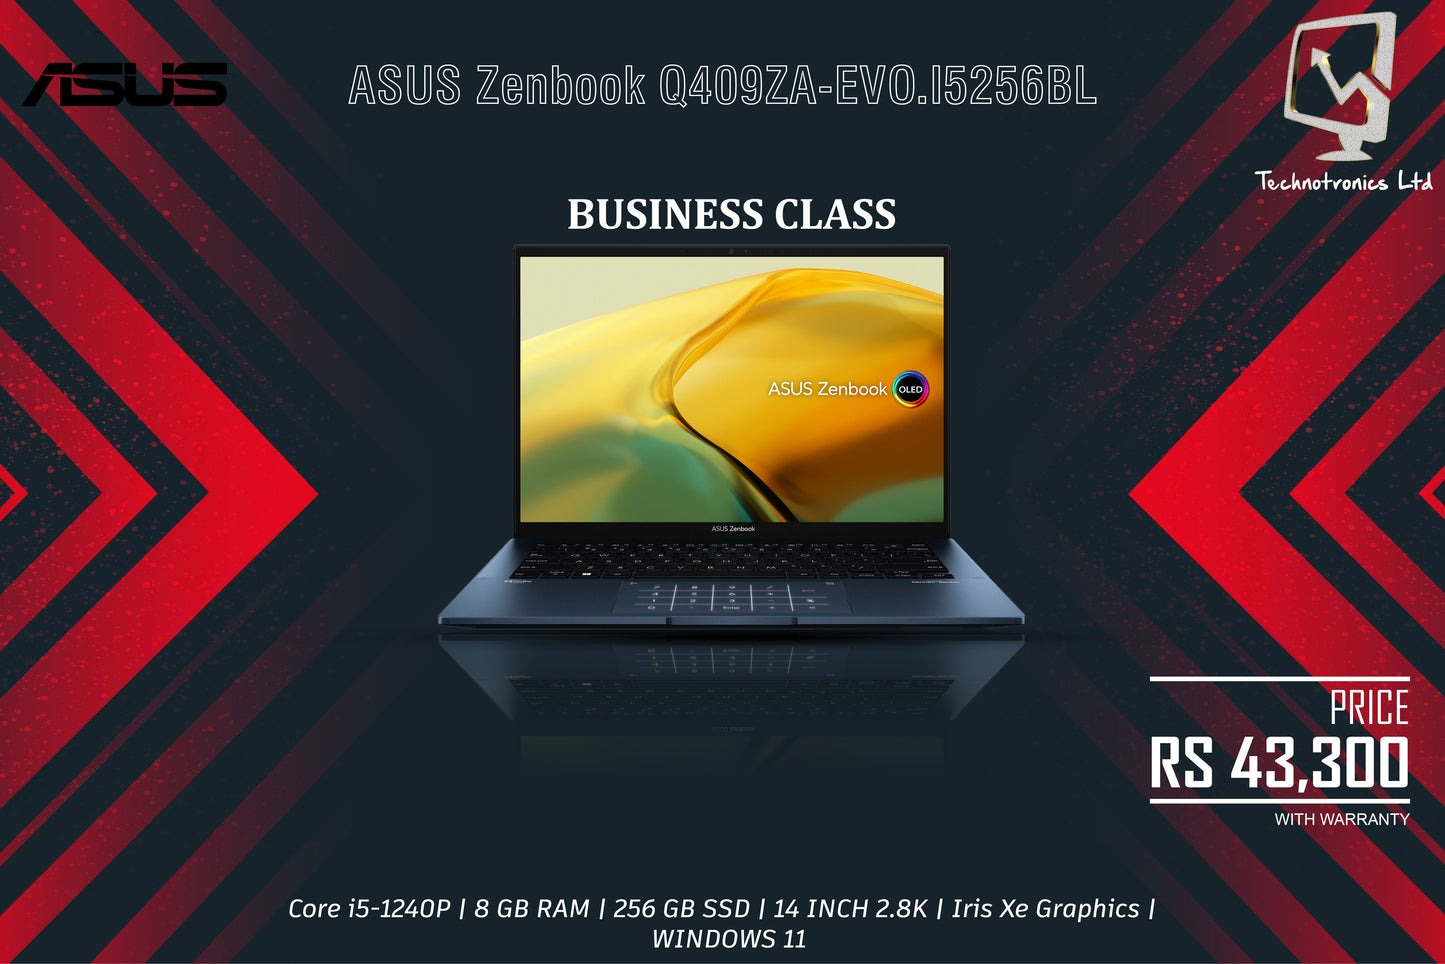 ASUS ZenBook Q409ZA-EVO.I5256BL